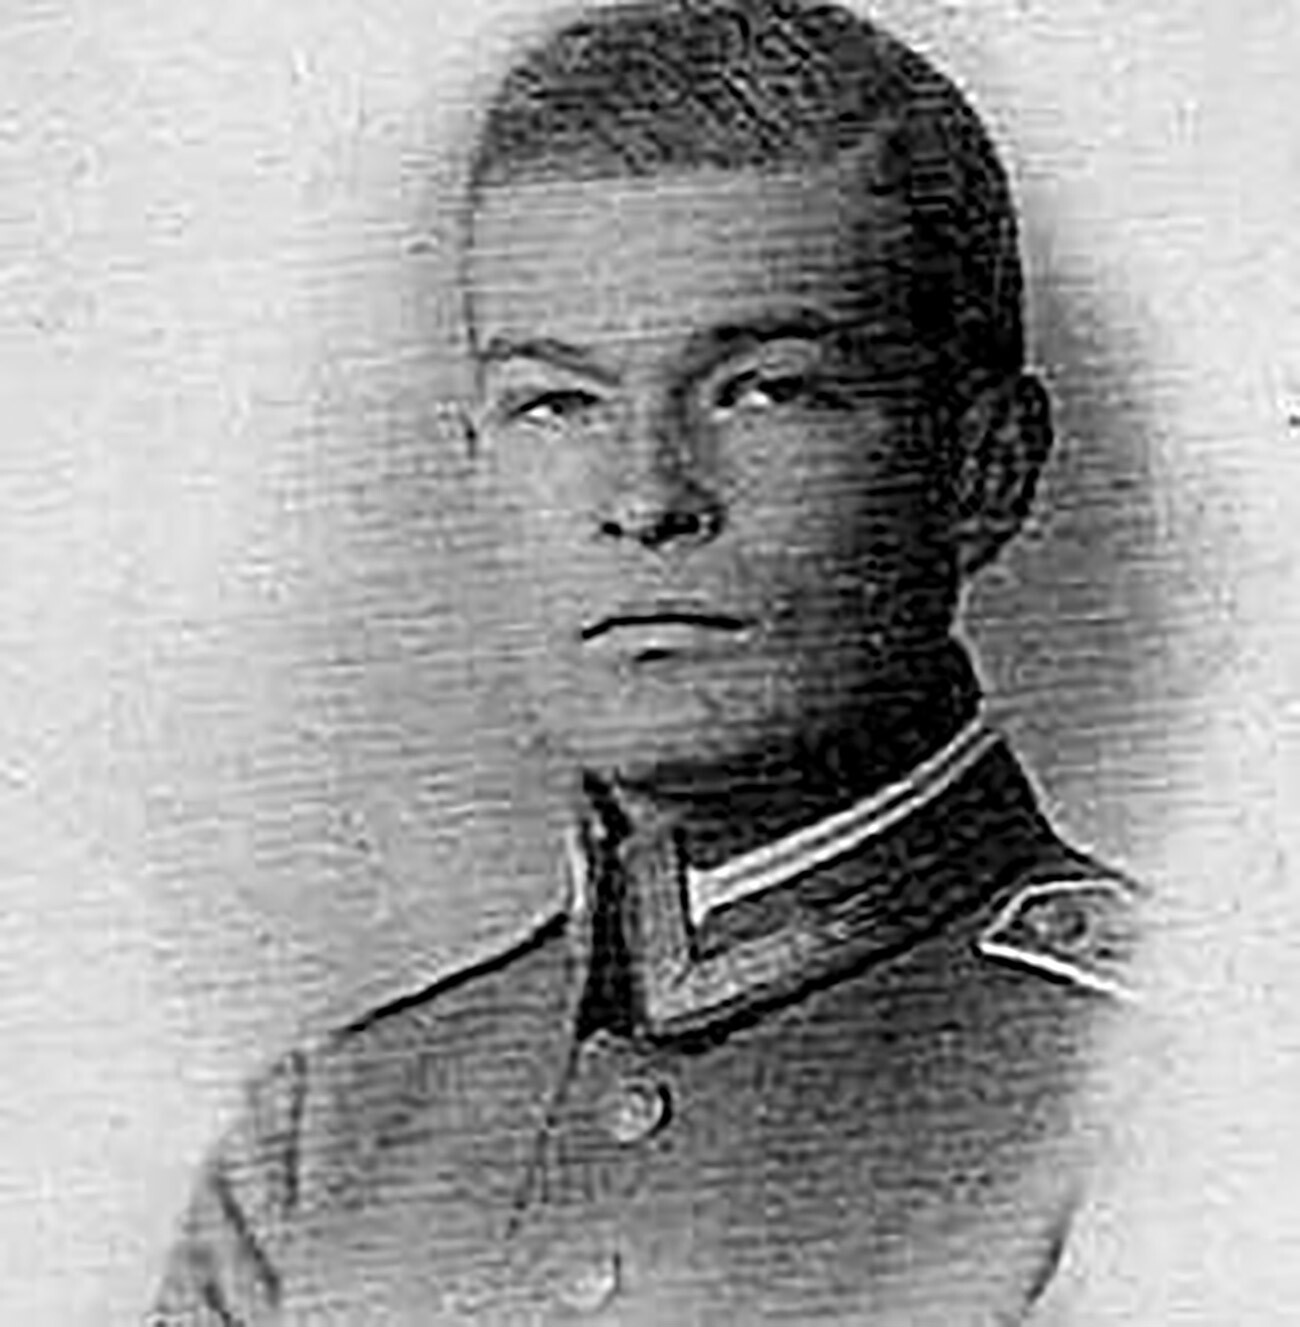 Georg-Michael Alexander von Merenberg in 1917.